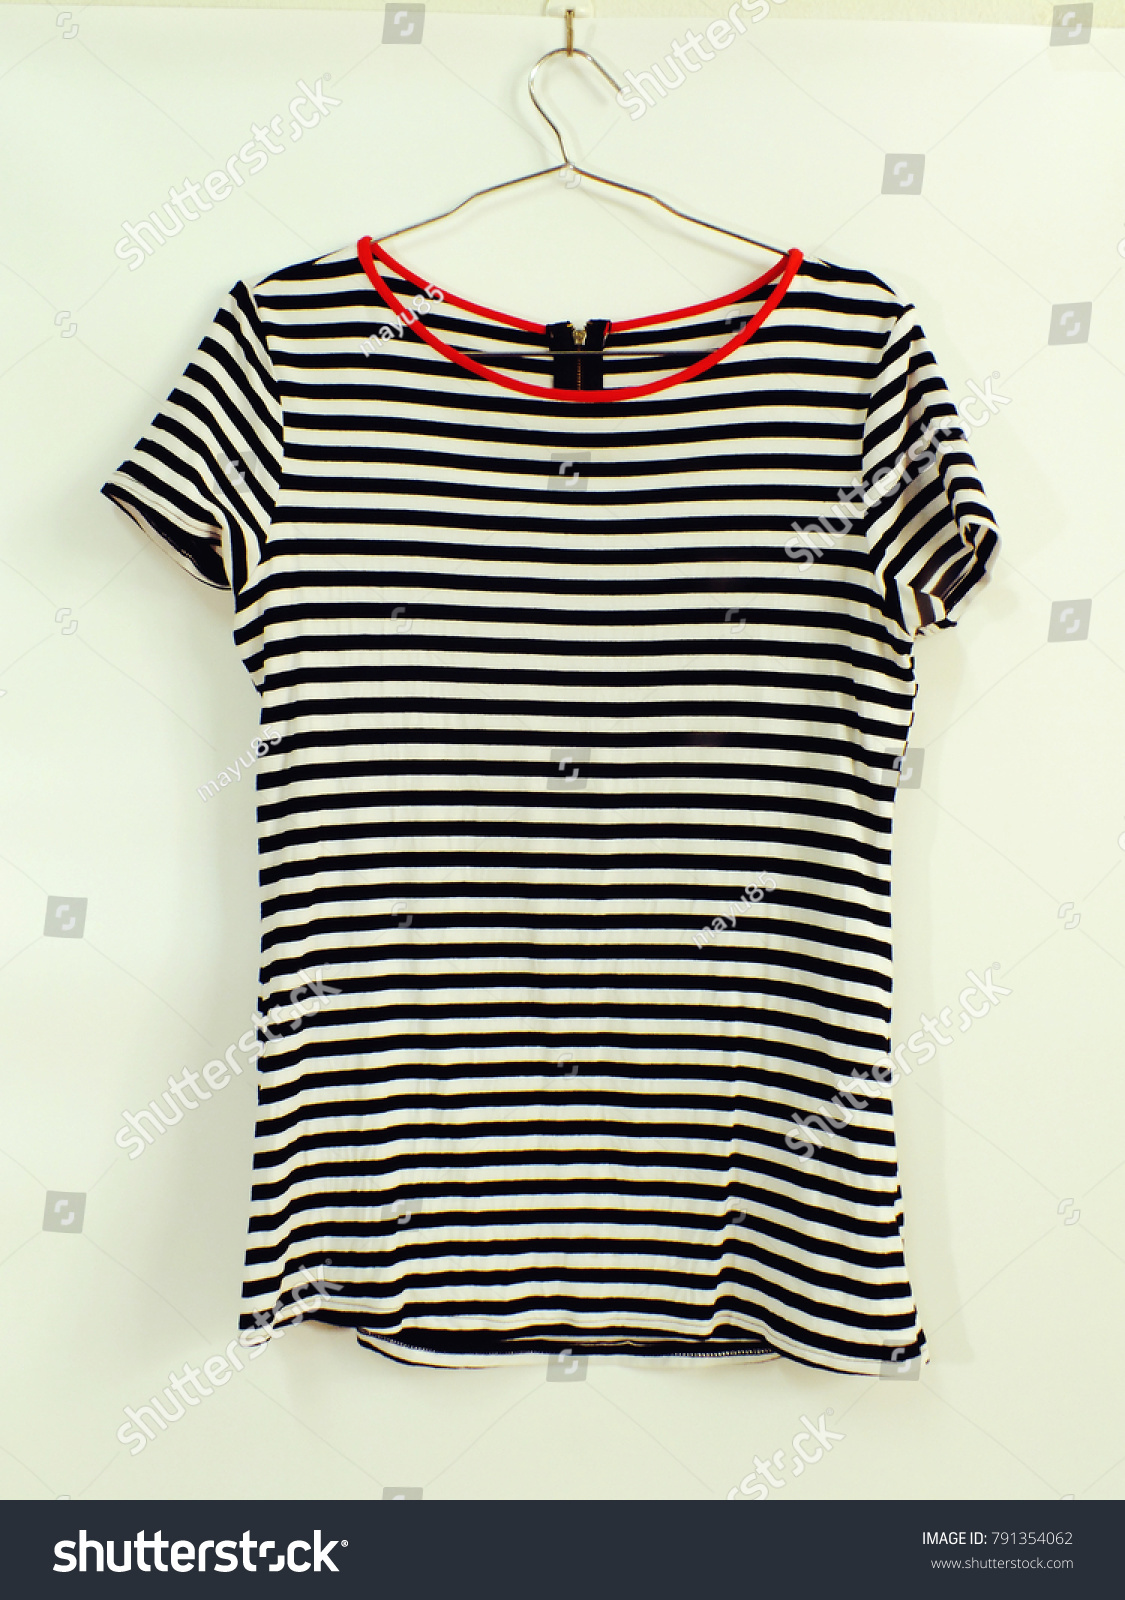 striped shirt hanging fashion clothing marine style #791354062